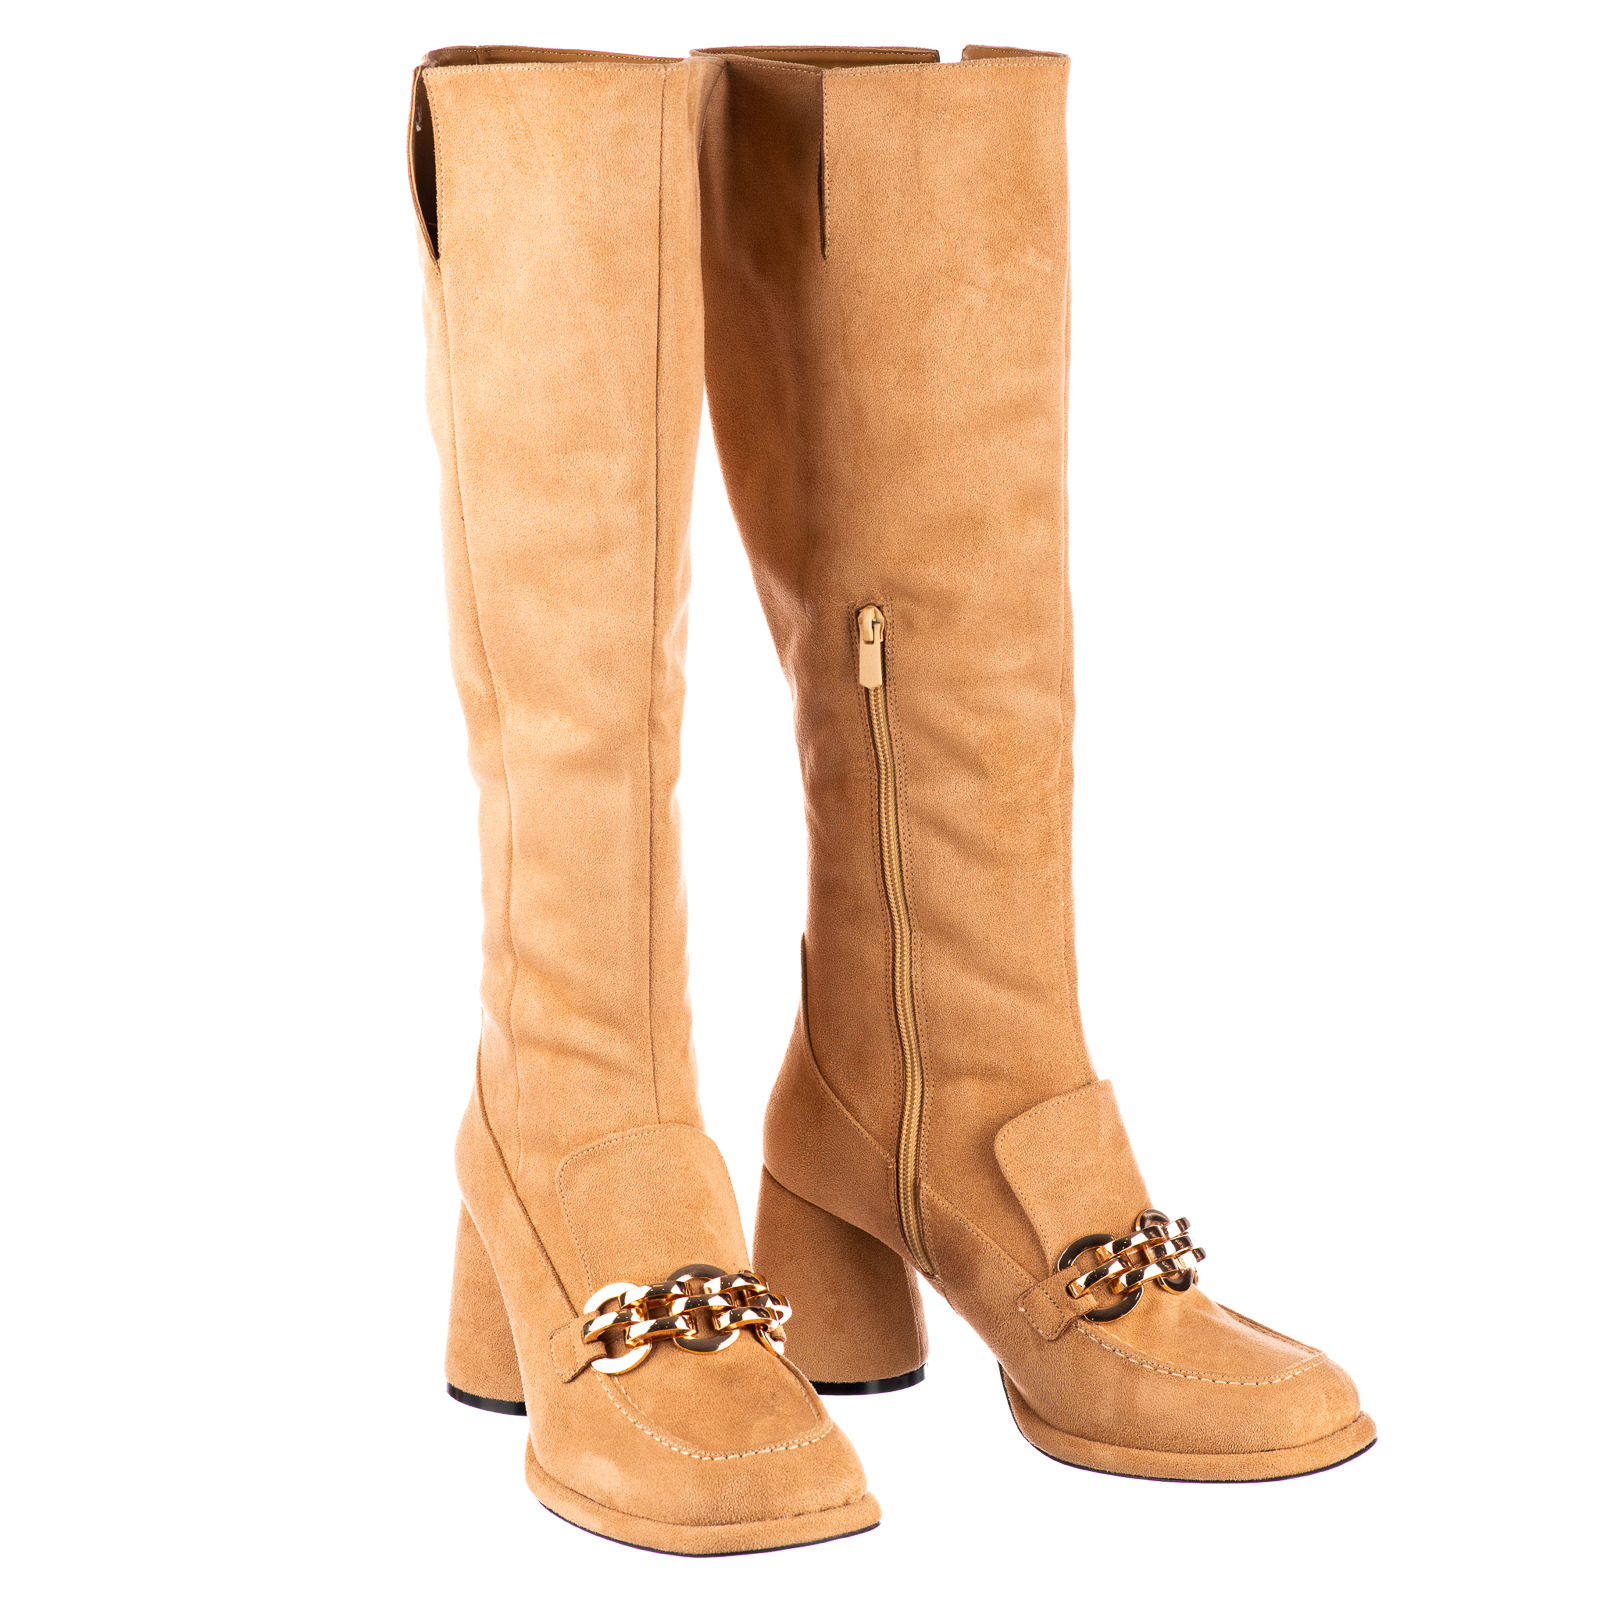 Women boots B700 - BEIGE